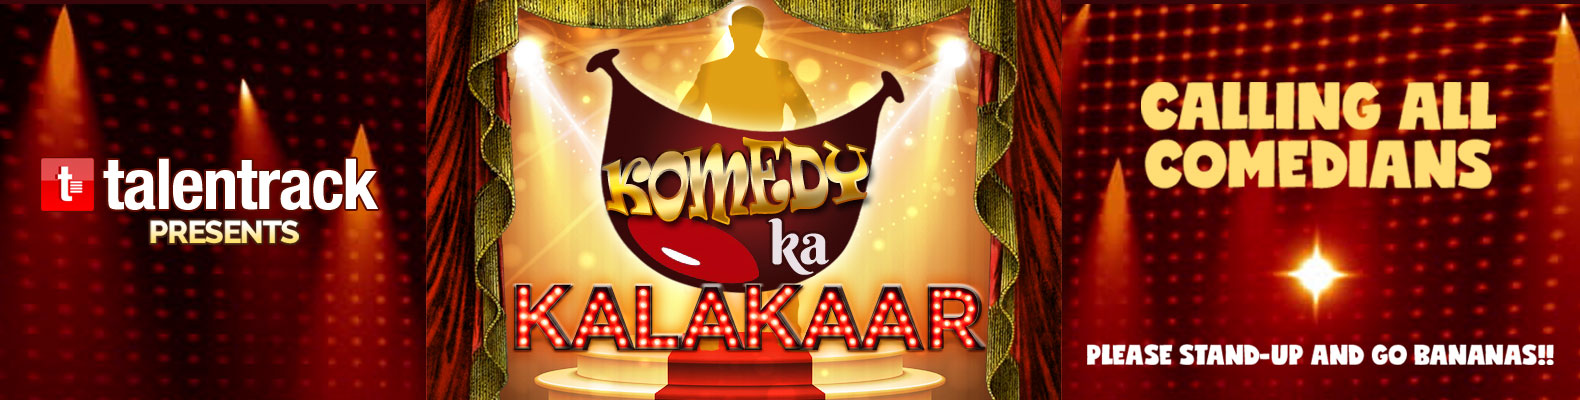 Komedy Ka Kalakaar